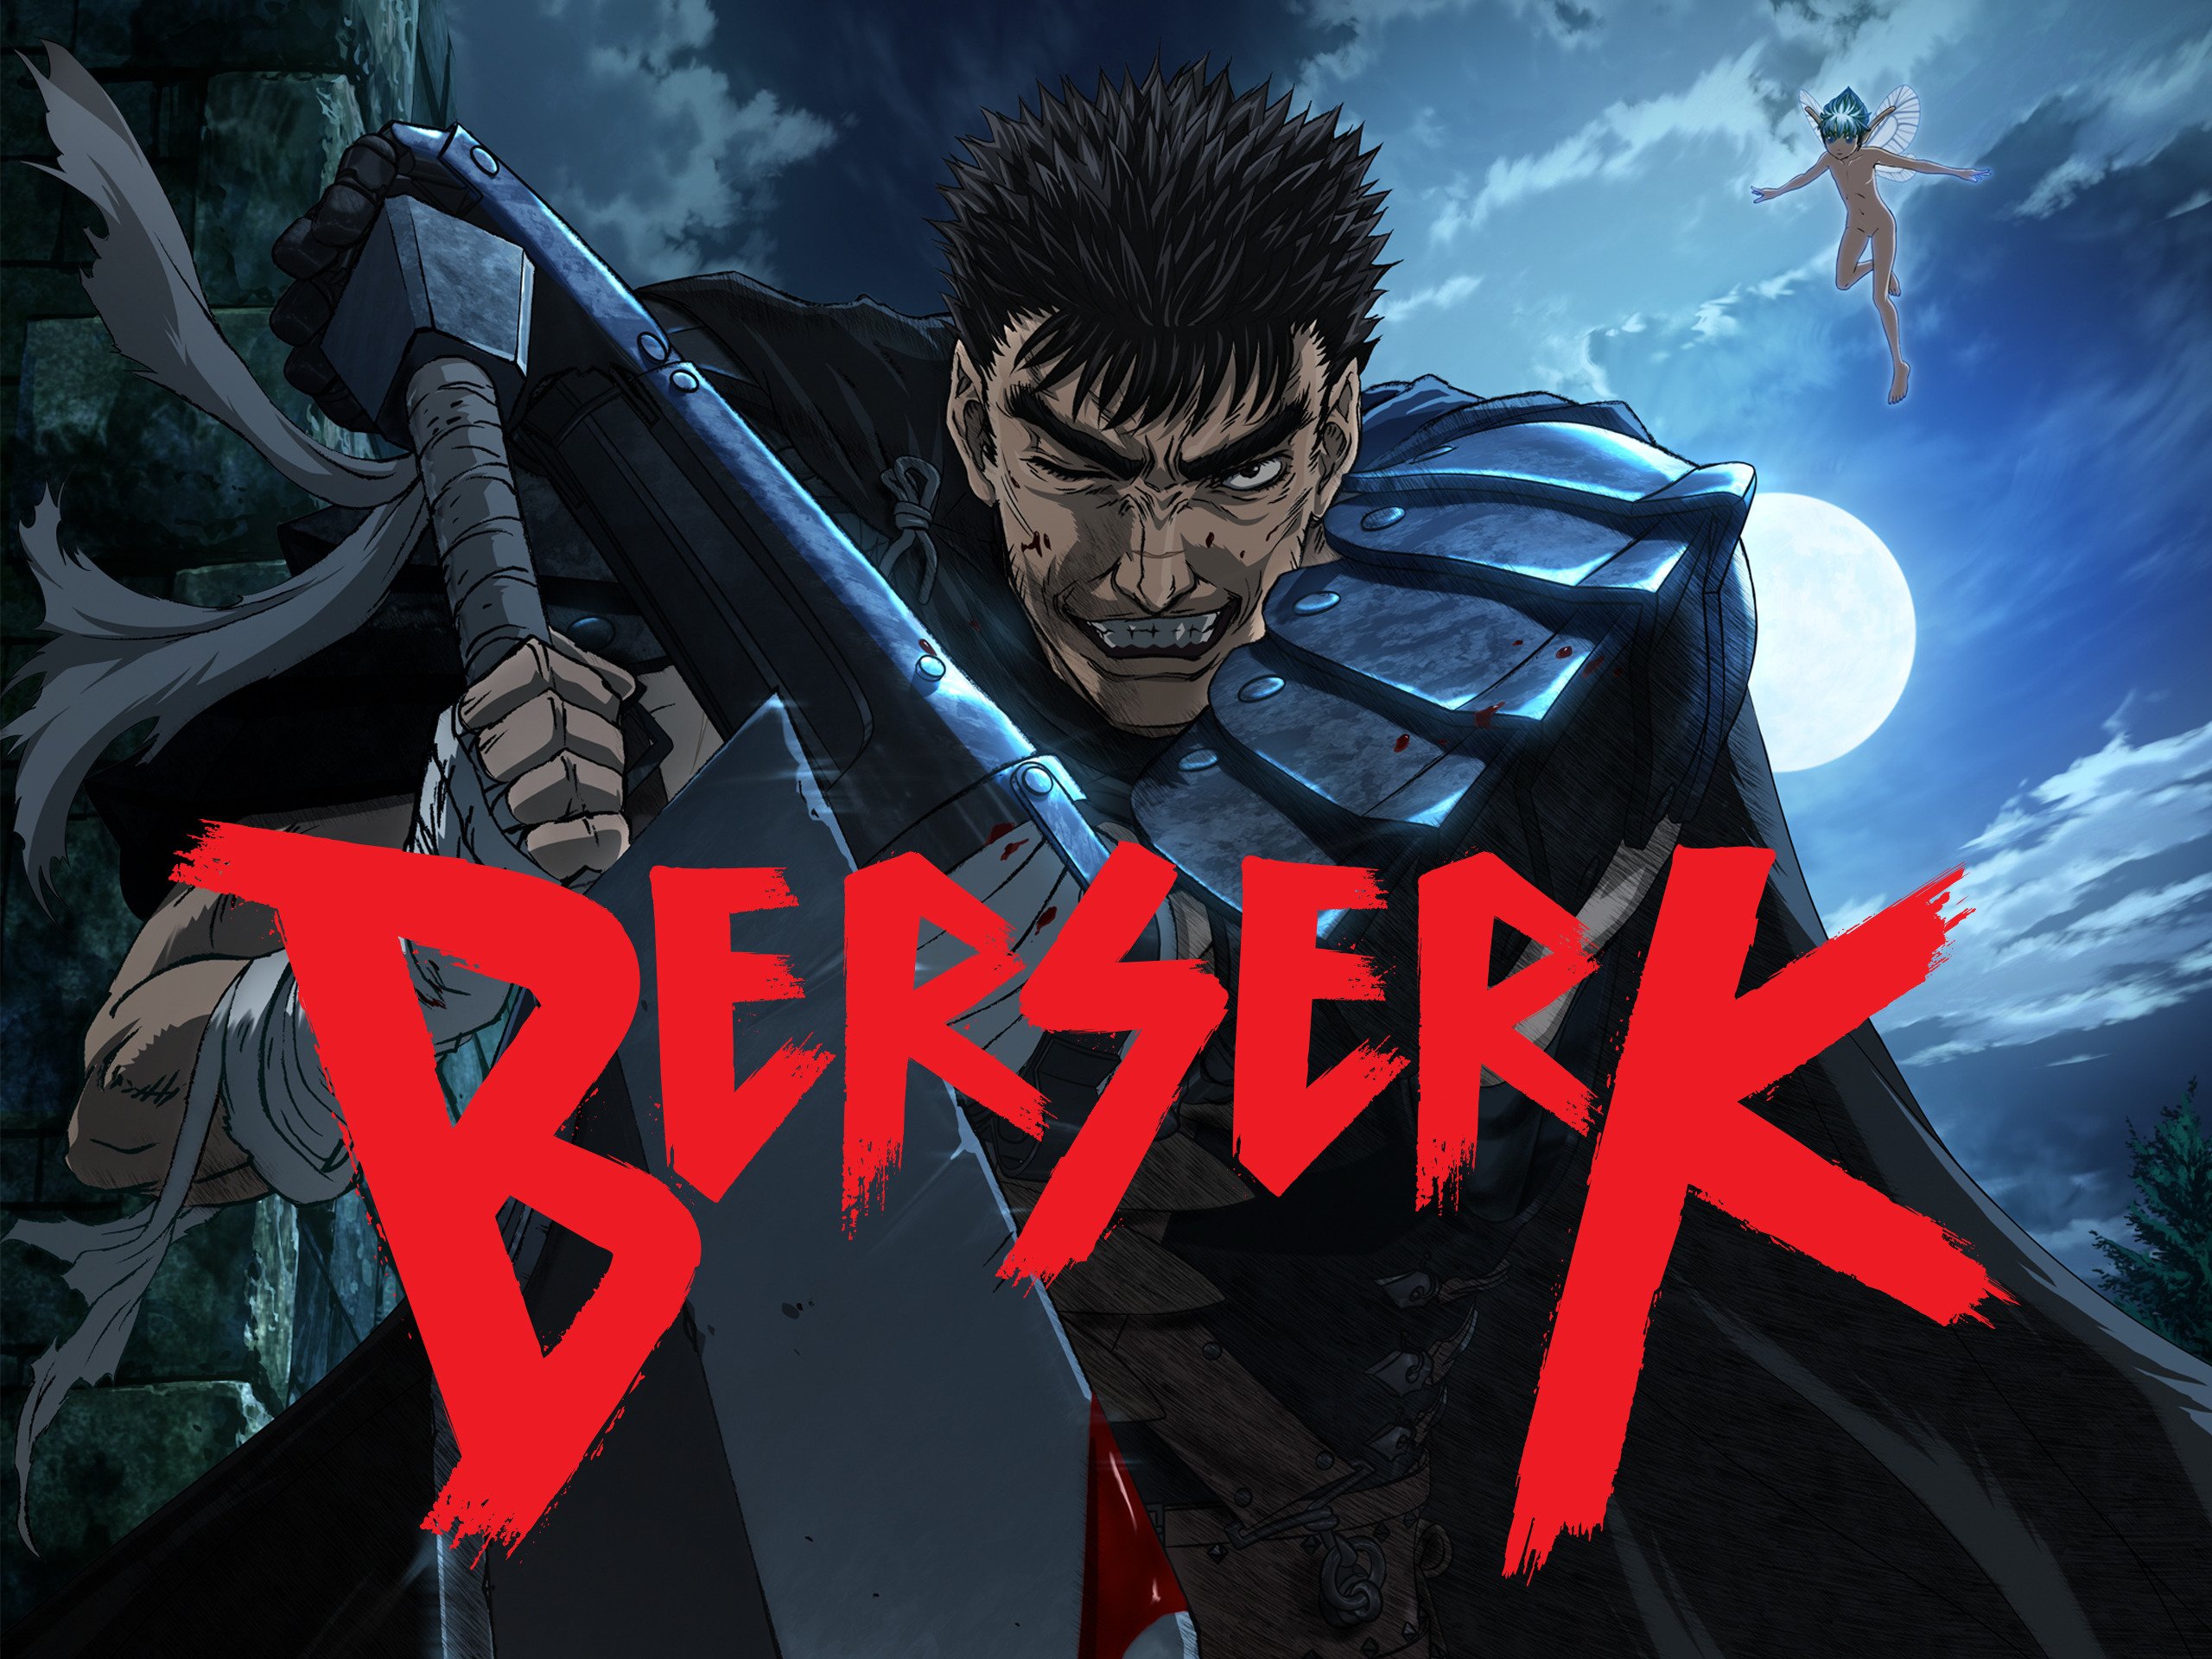 How To Watch Berserk